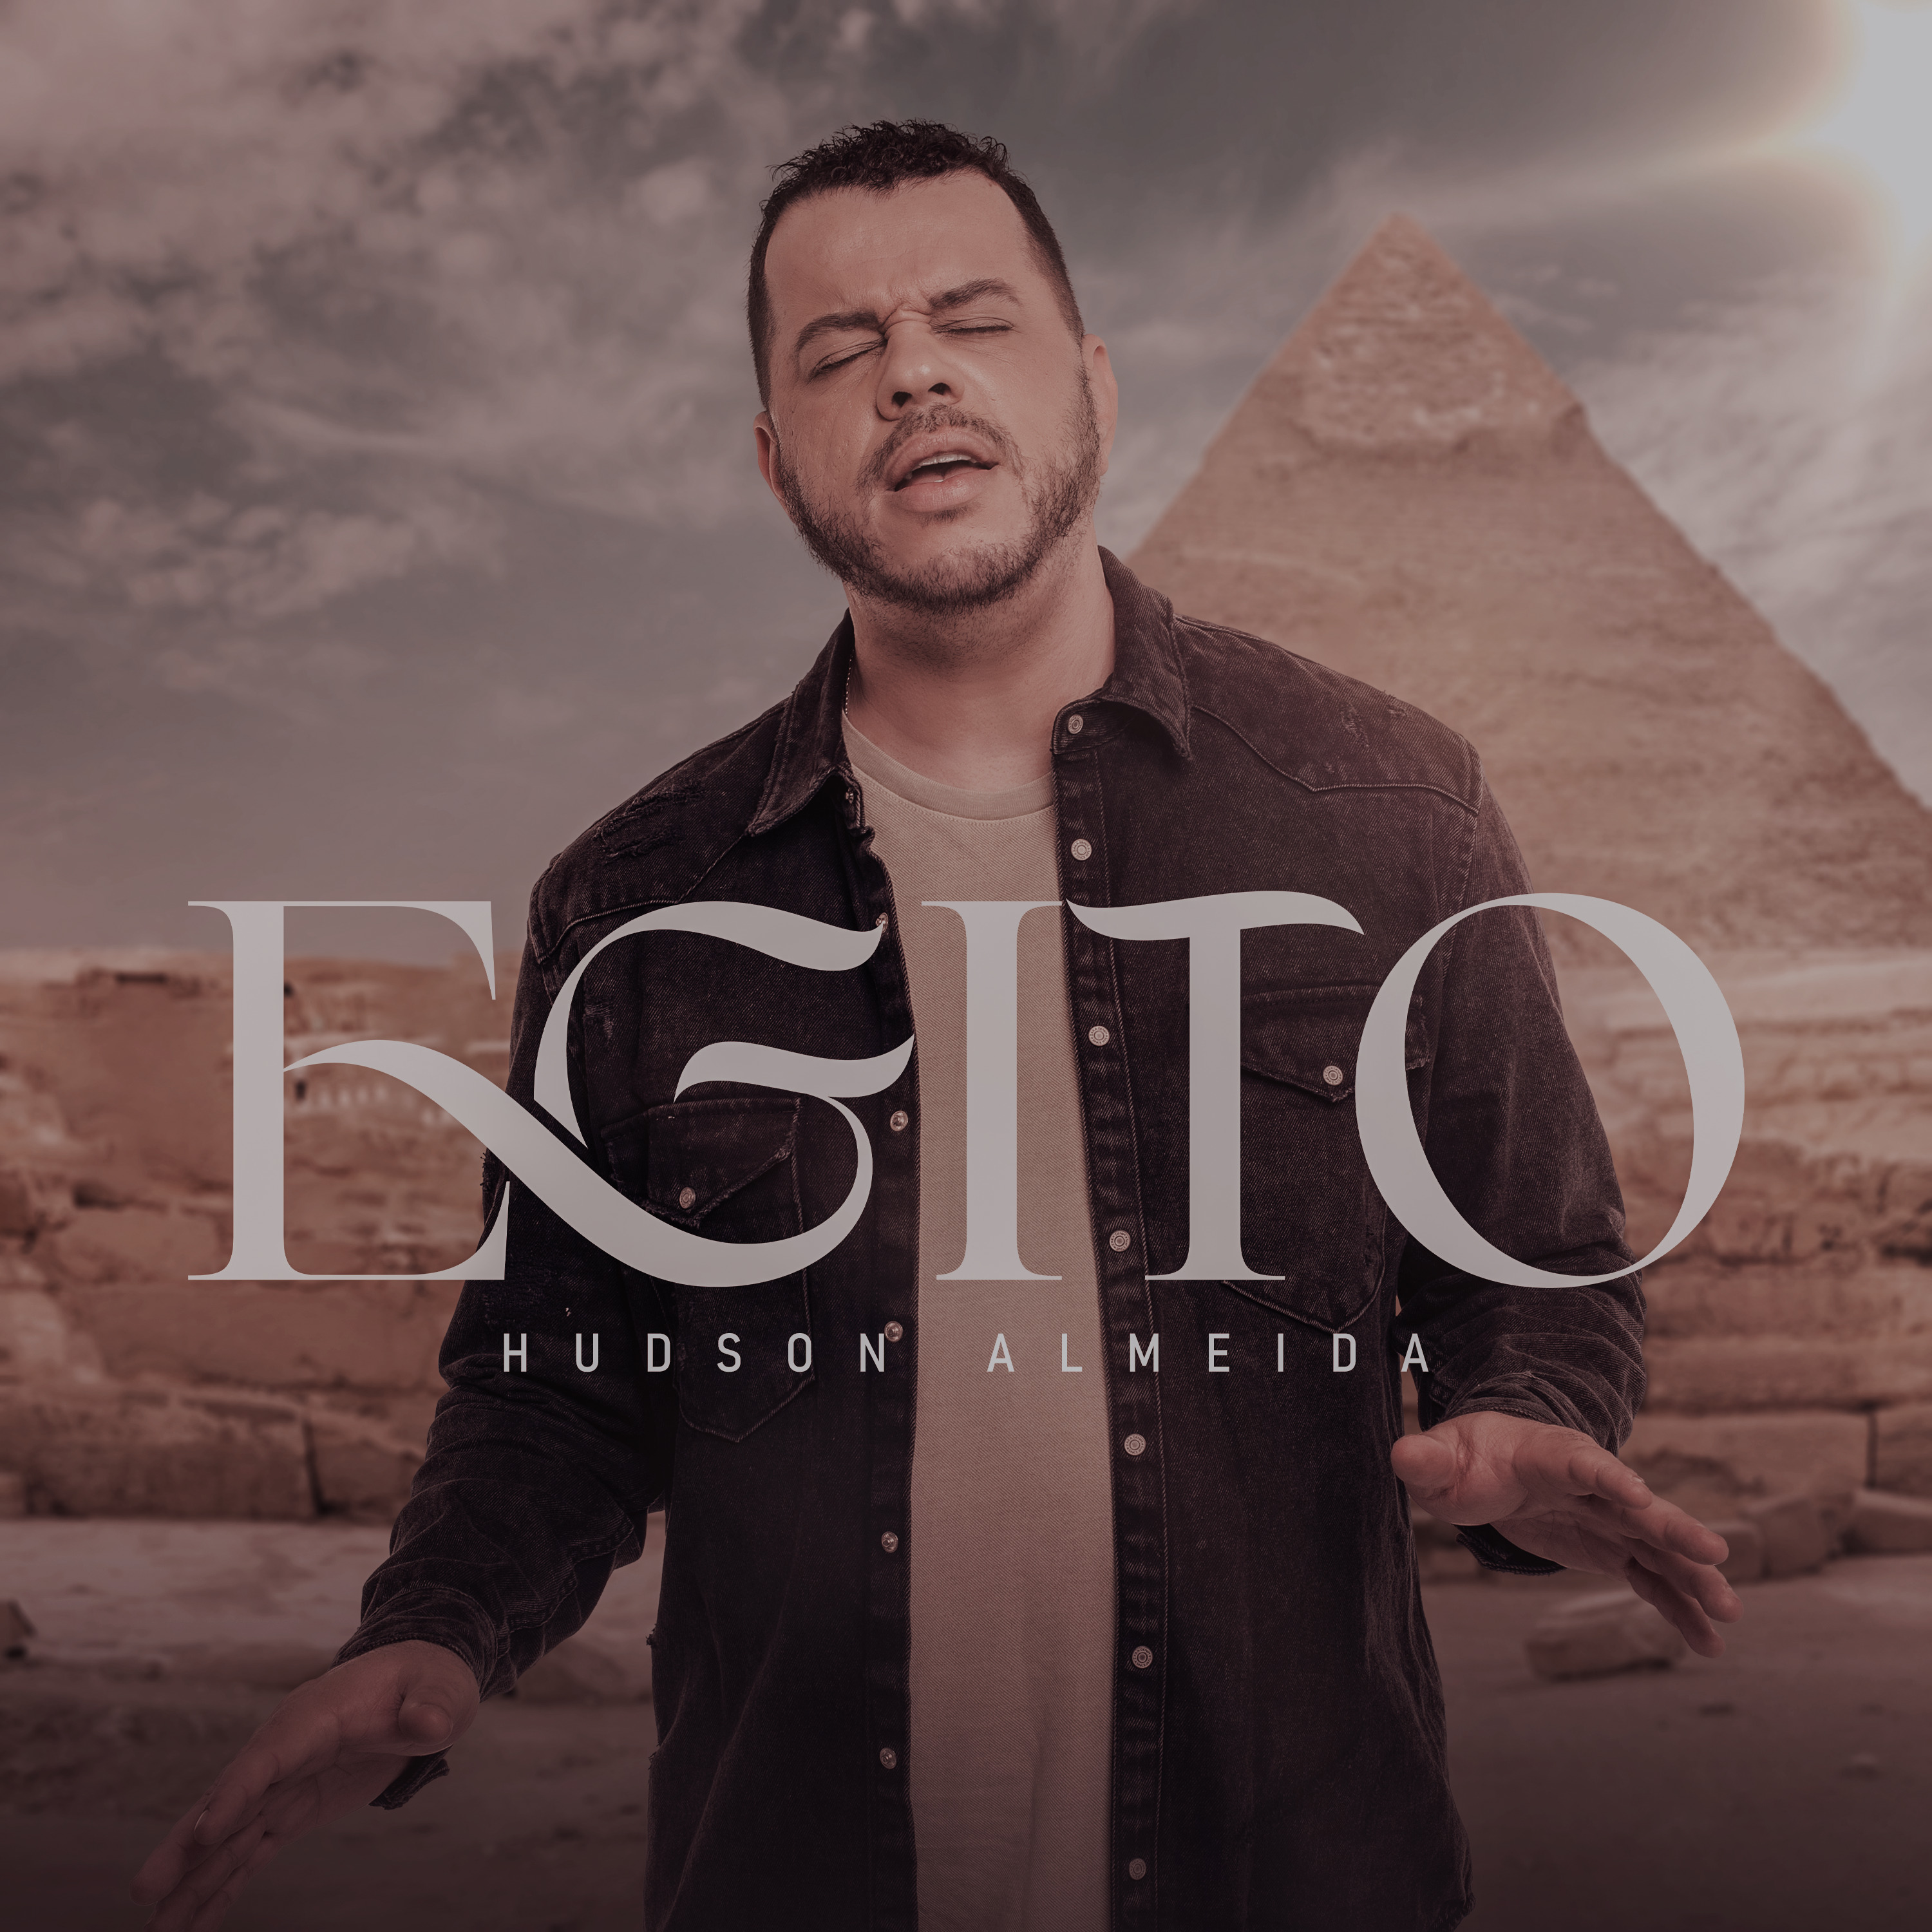 Hudson Almeida lança “Egito”, um single que fala de Salvação e vida